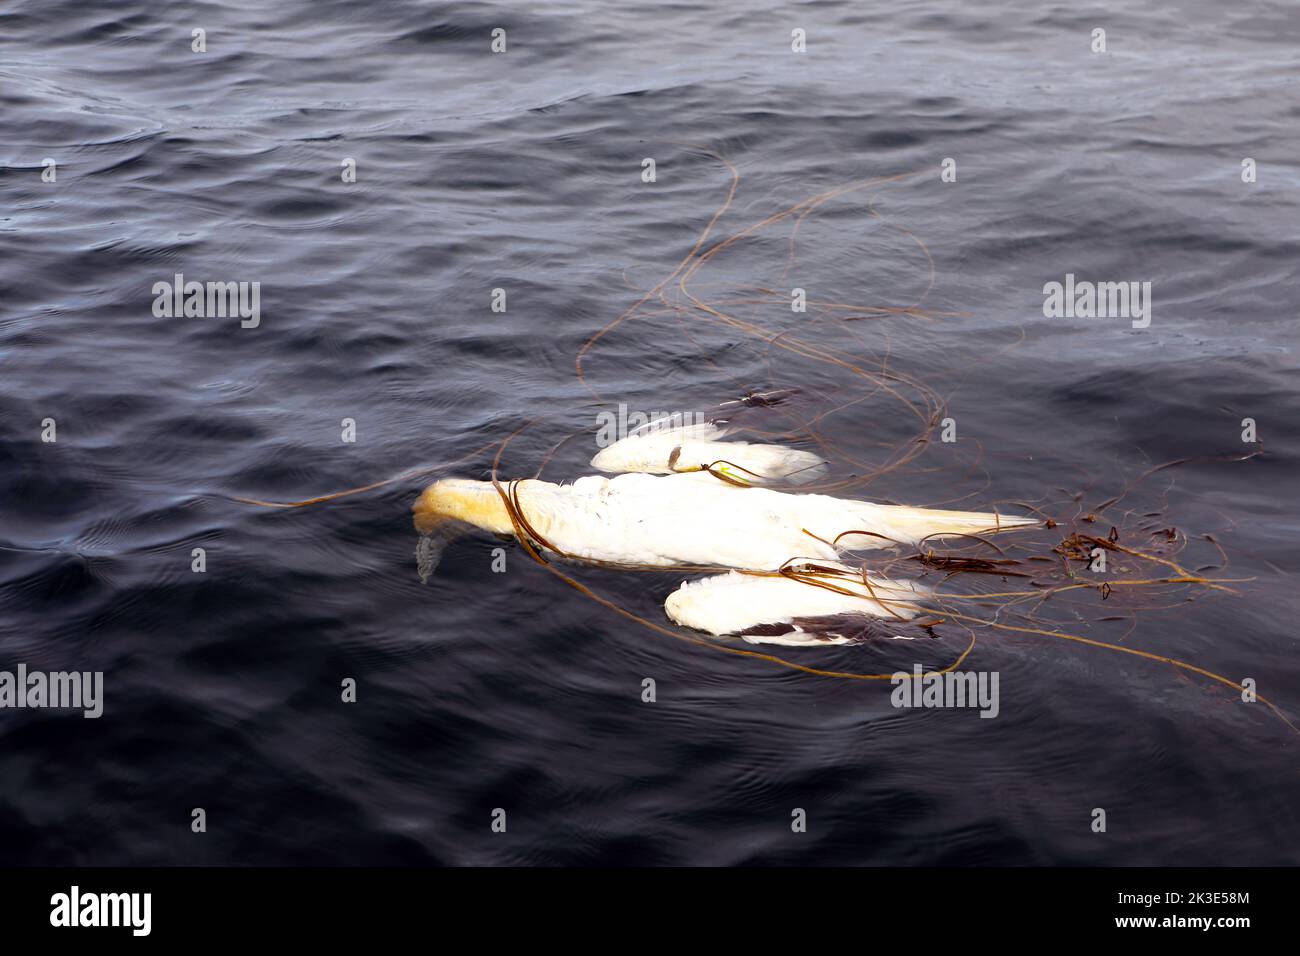 Gannet morto, una vittima di influenza aviaria o influenza aviaria, galleggiando nel mare aggrovigliato in alghe al largo della costa dell'isola di Mull, Scozia Foto Stock